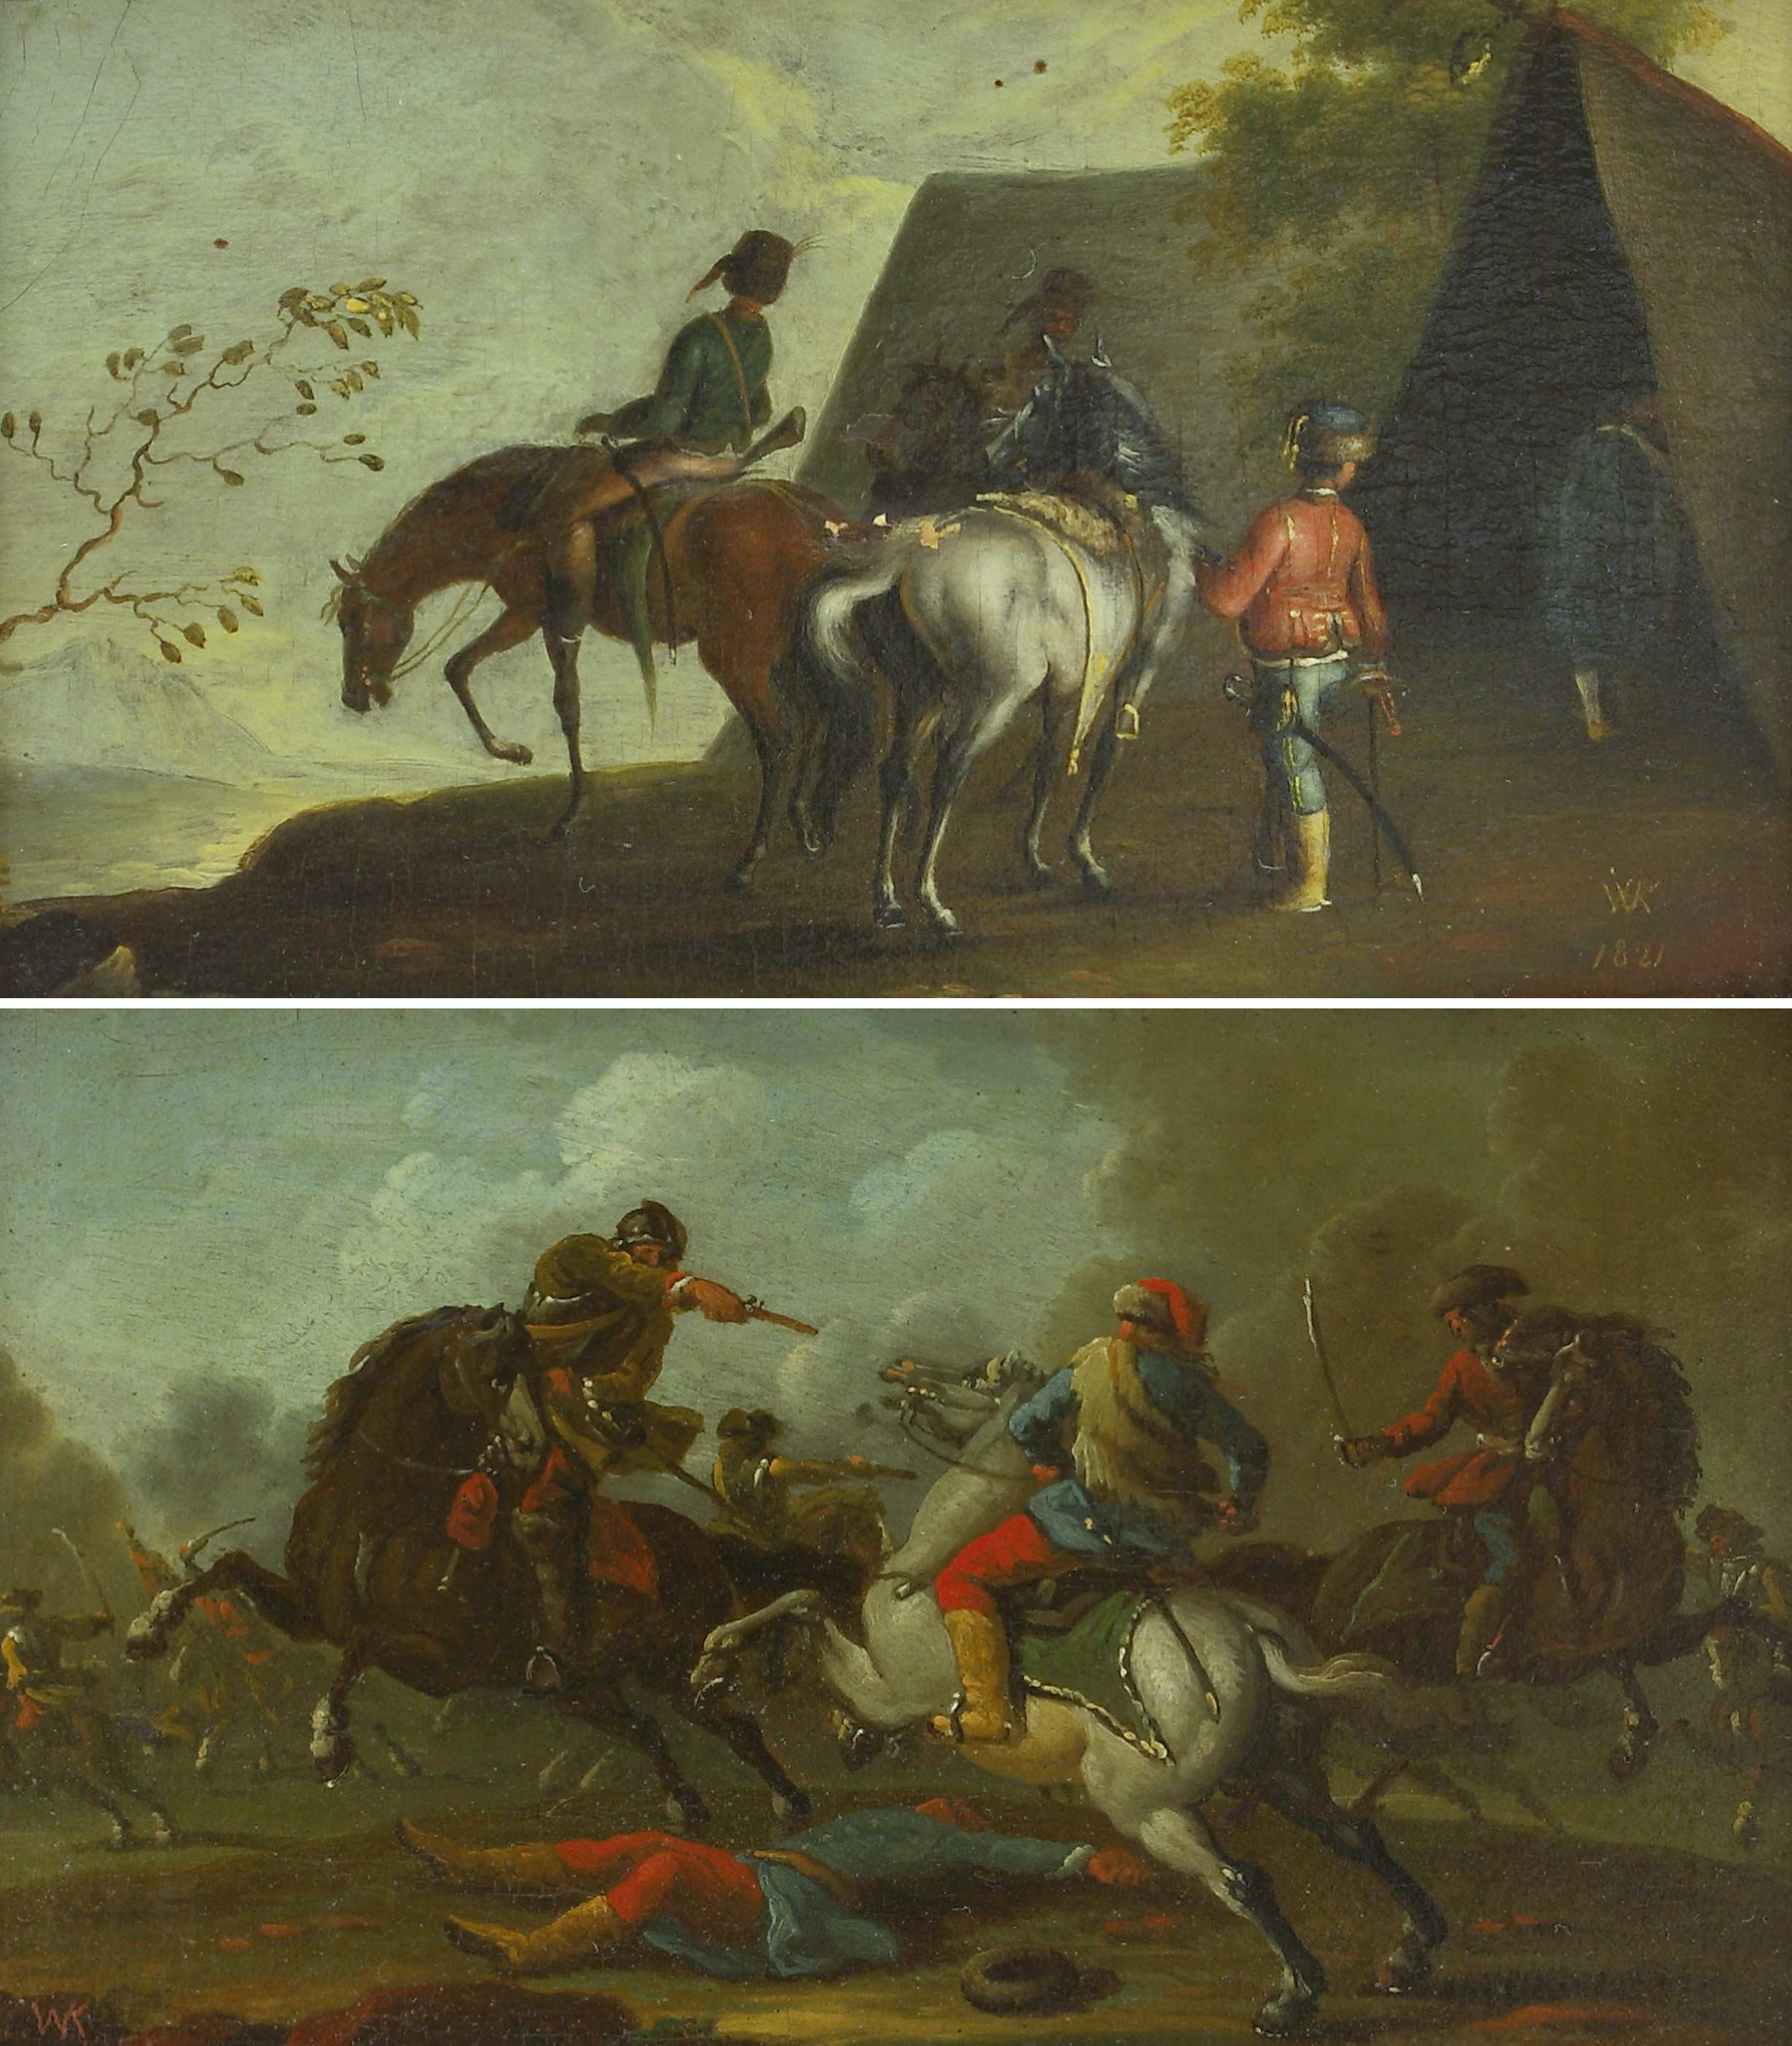 Auktionshaus Quentin Berlin Kobell  Wilhelm von (1766 Mannheim - 1855 MÃ¼nchen) zugeschr. Schlachtenszene; Reitergruppe vor einem Zelt. 1821. GegenstÃ¼cke. Ãl auf Papier a